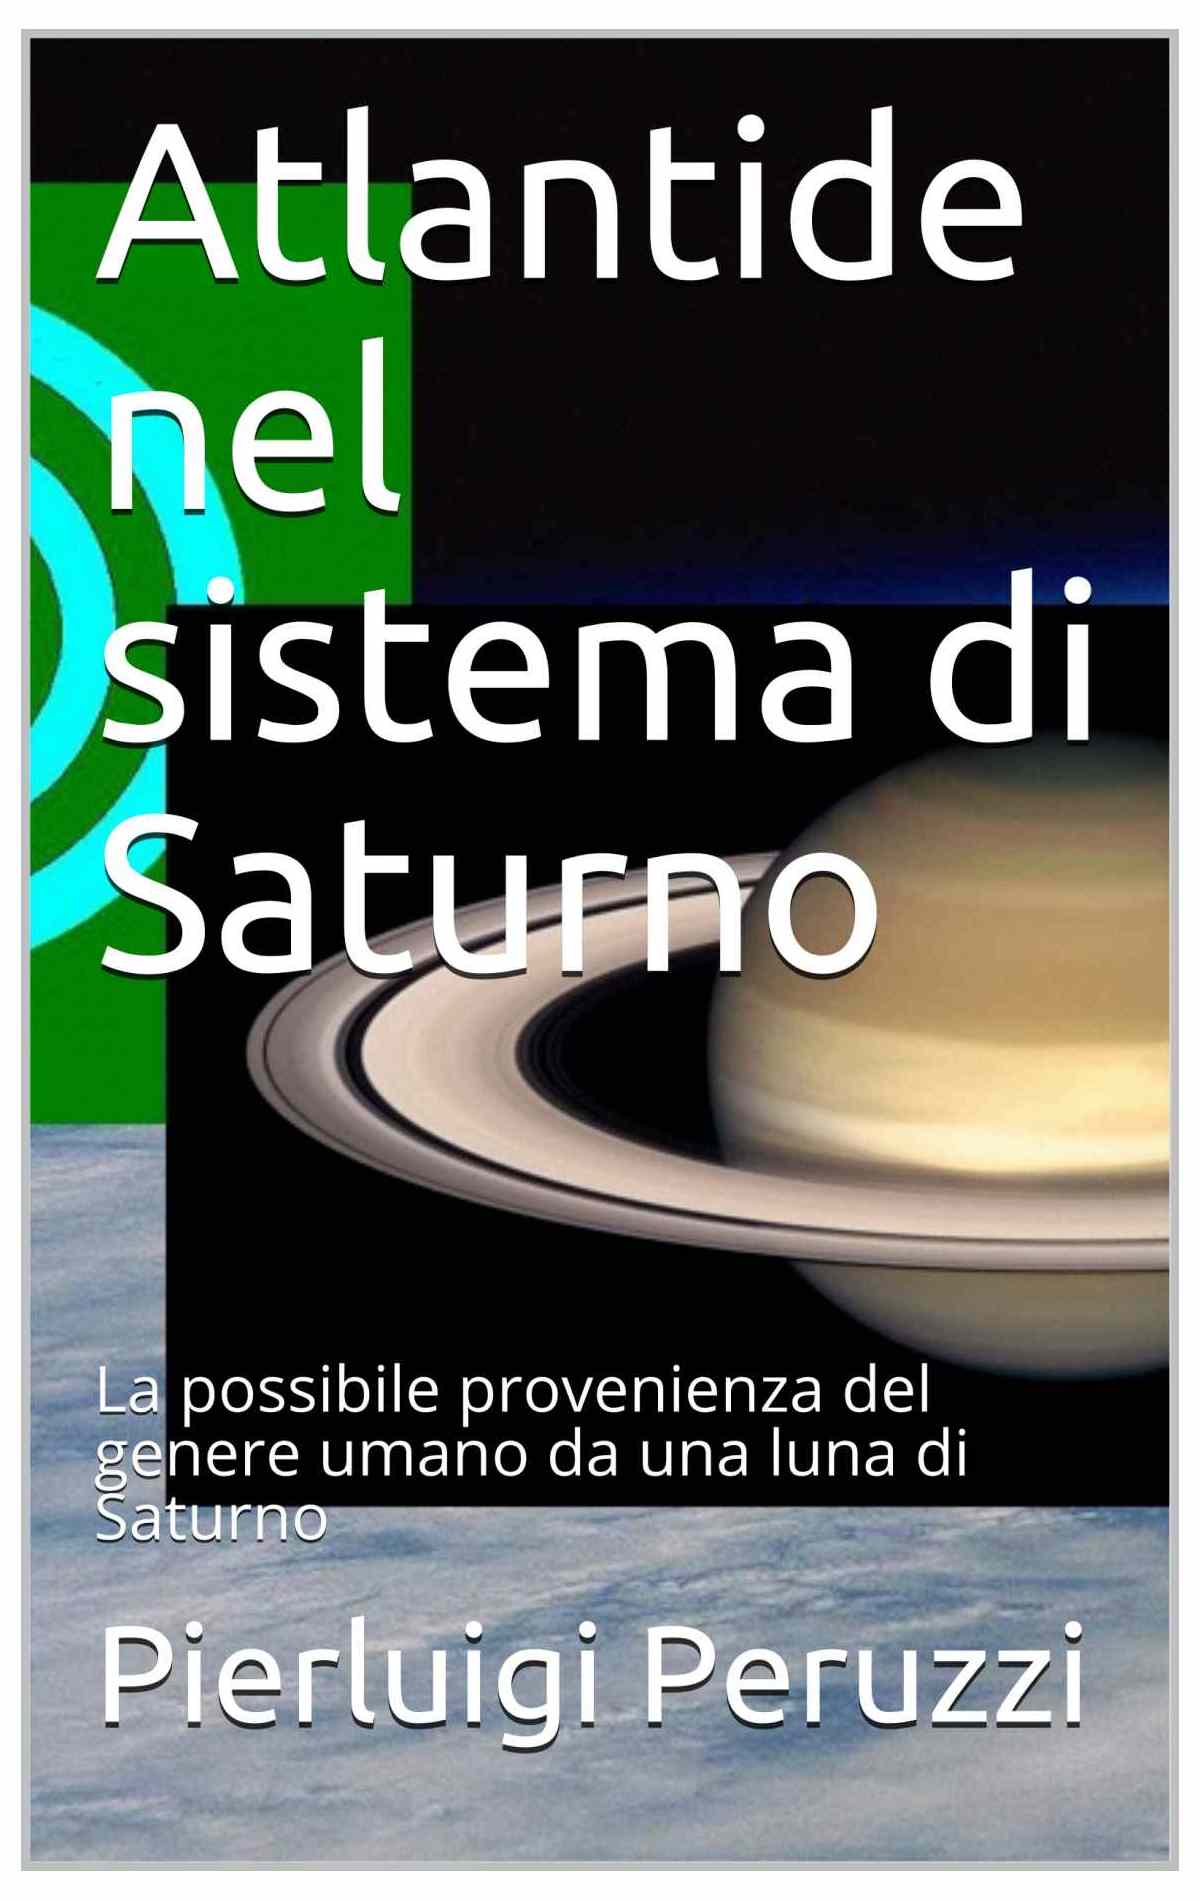 atlantide nel sistema di saturno, una teoria sulla provenienza del genere umano, italian edition